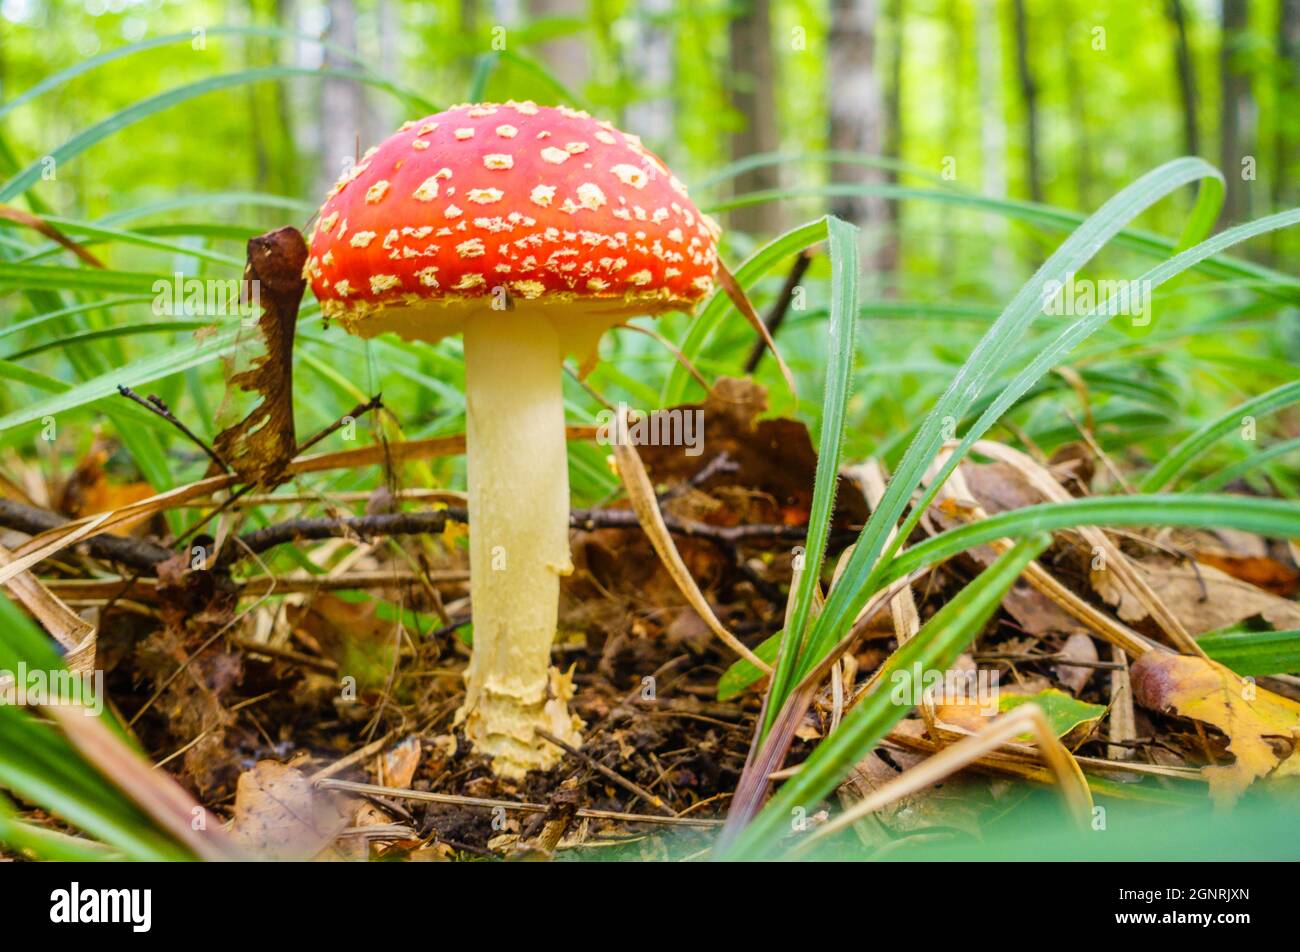 Immagine ravvicinata di un fungo amanita nella foresta russa Foto Stock